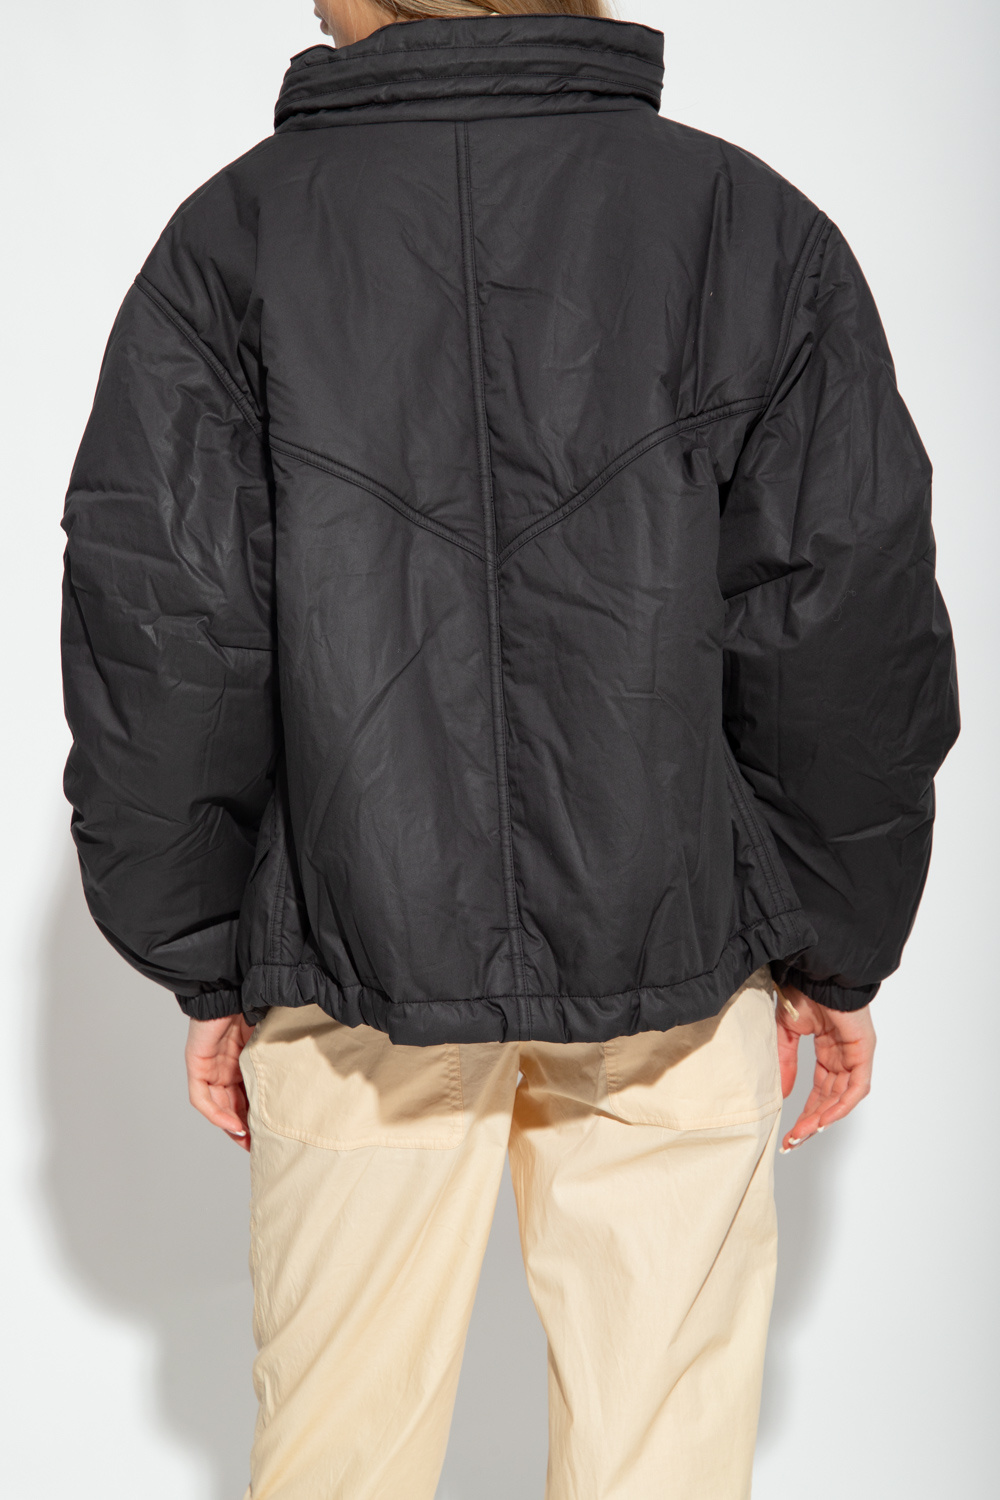 Marant Etoile ‘Reni’ scollo jacket